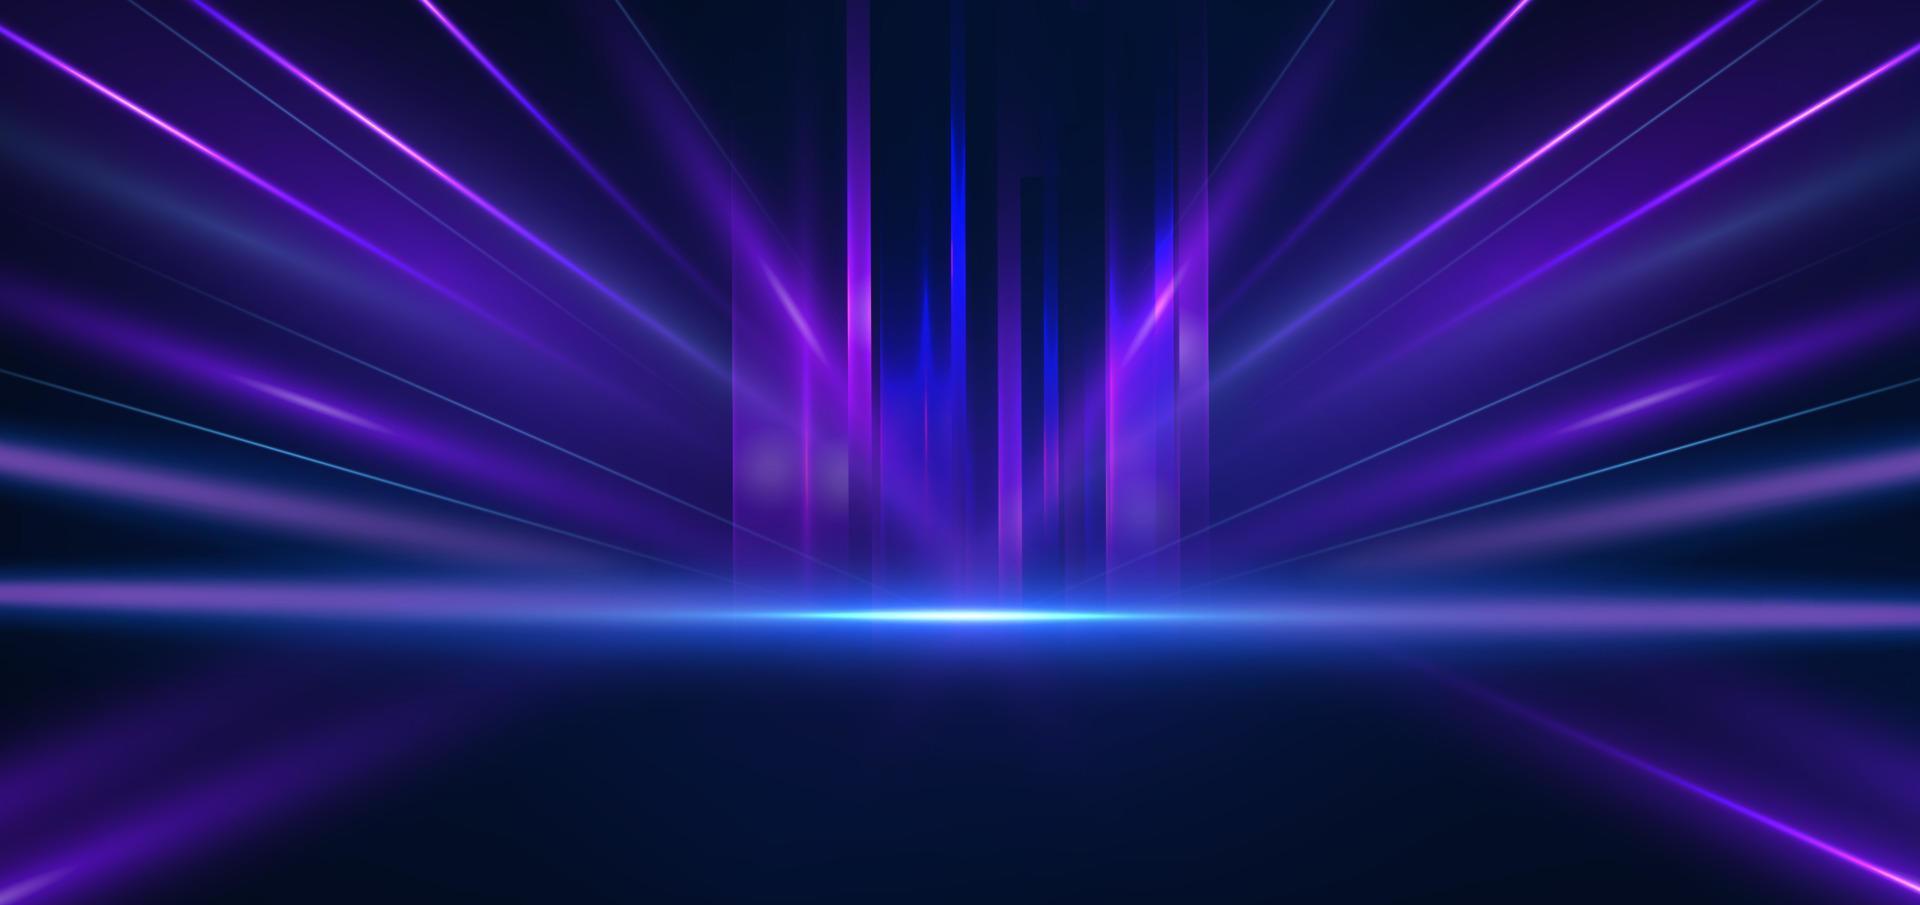 tecnología abstracta líneas de luz azul y púrpura brillantes futuristas con efecto de desenfoque de movimiento de velocidad sobre fondo azul oscuro. vector